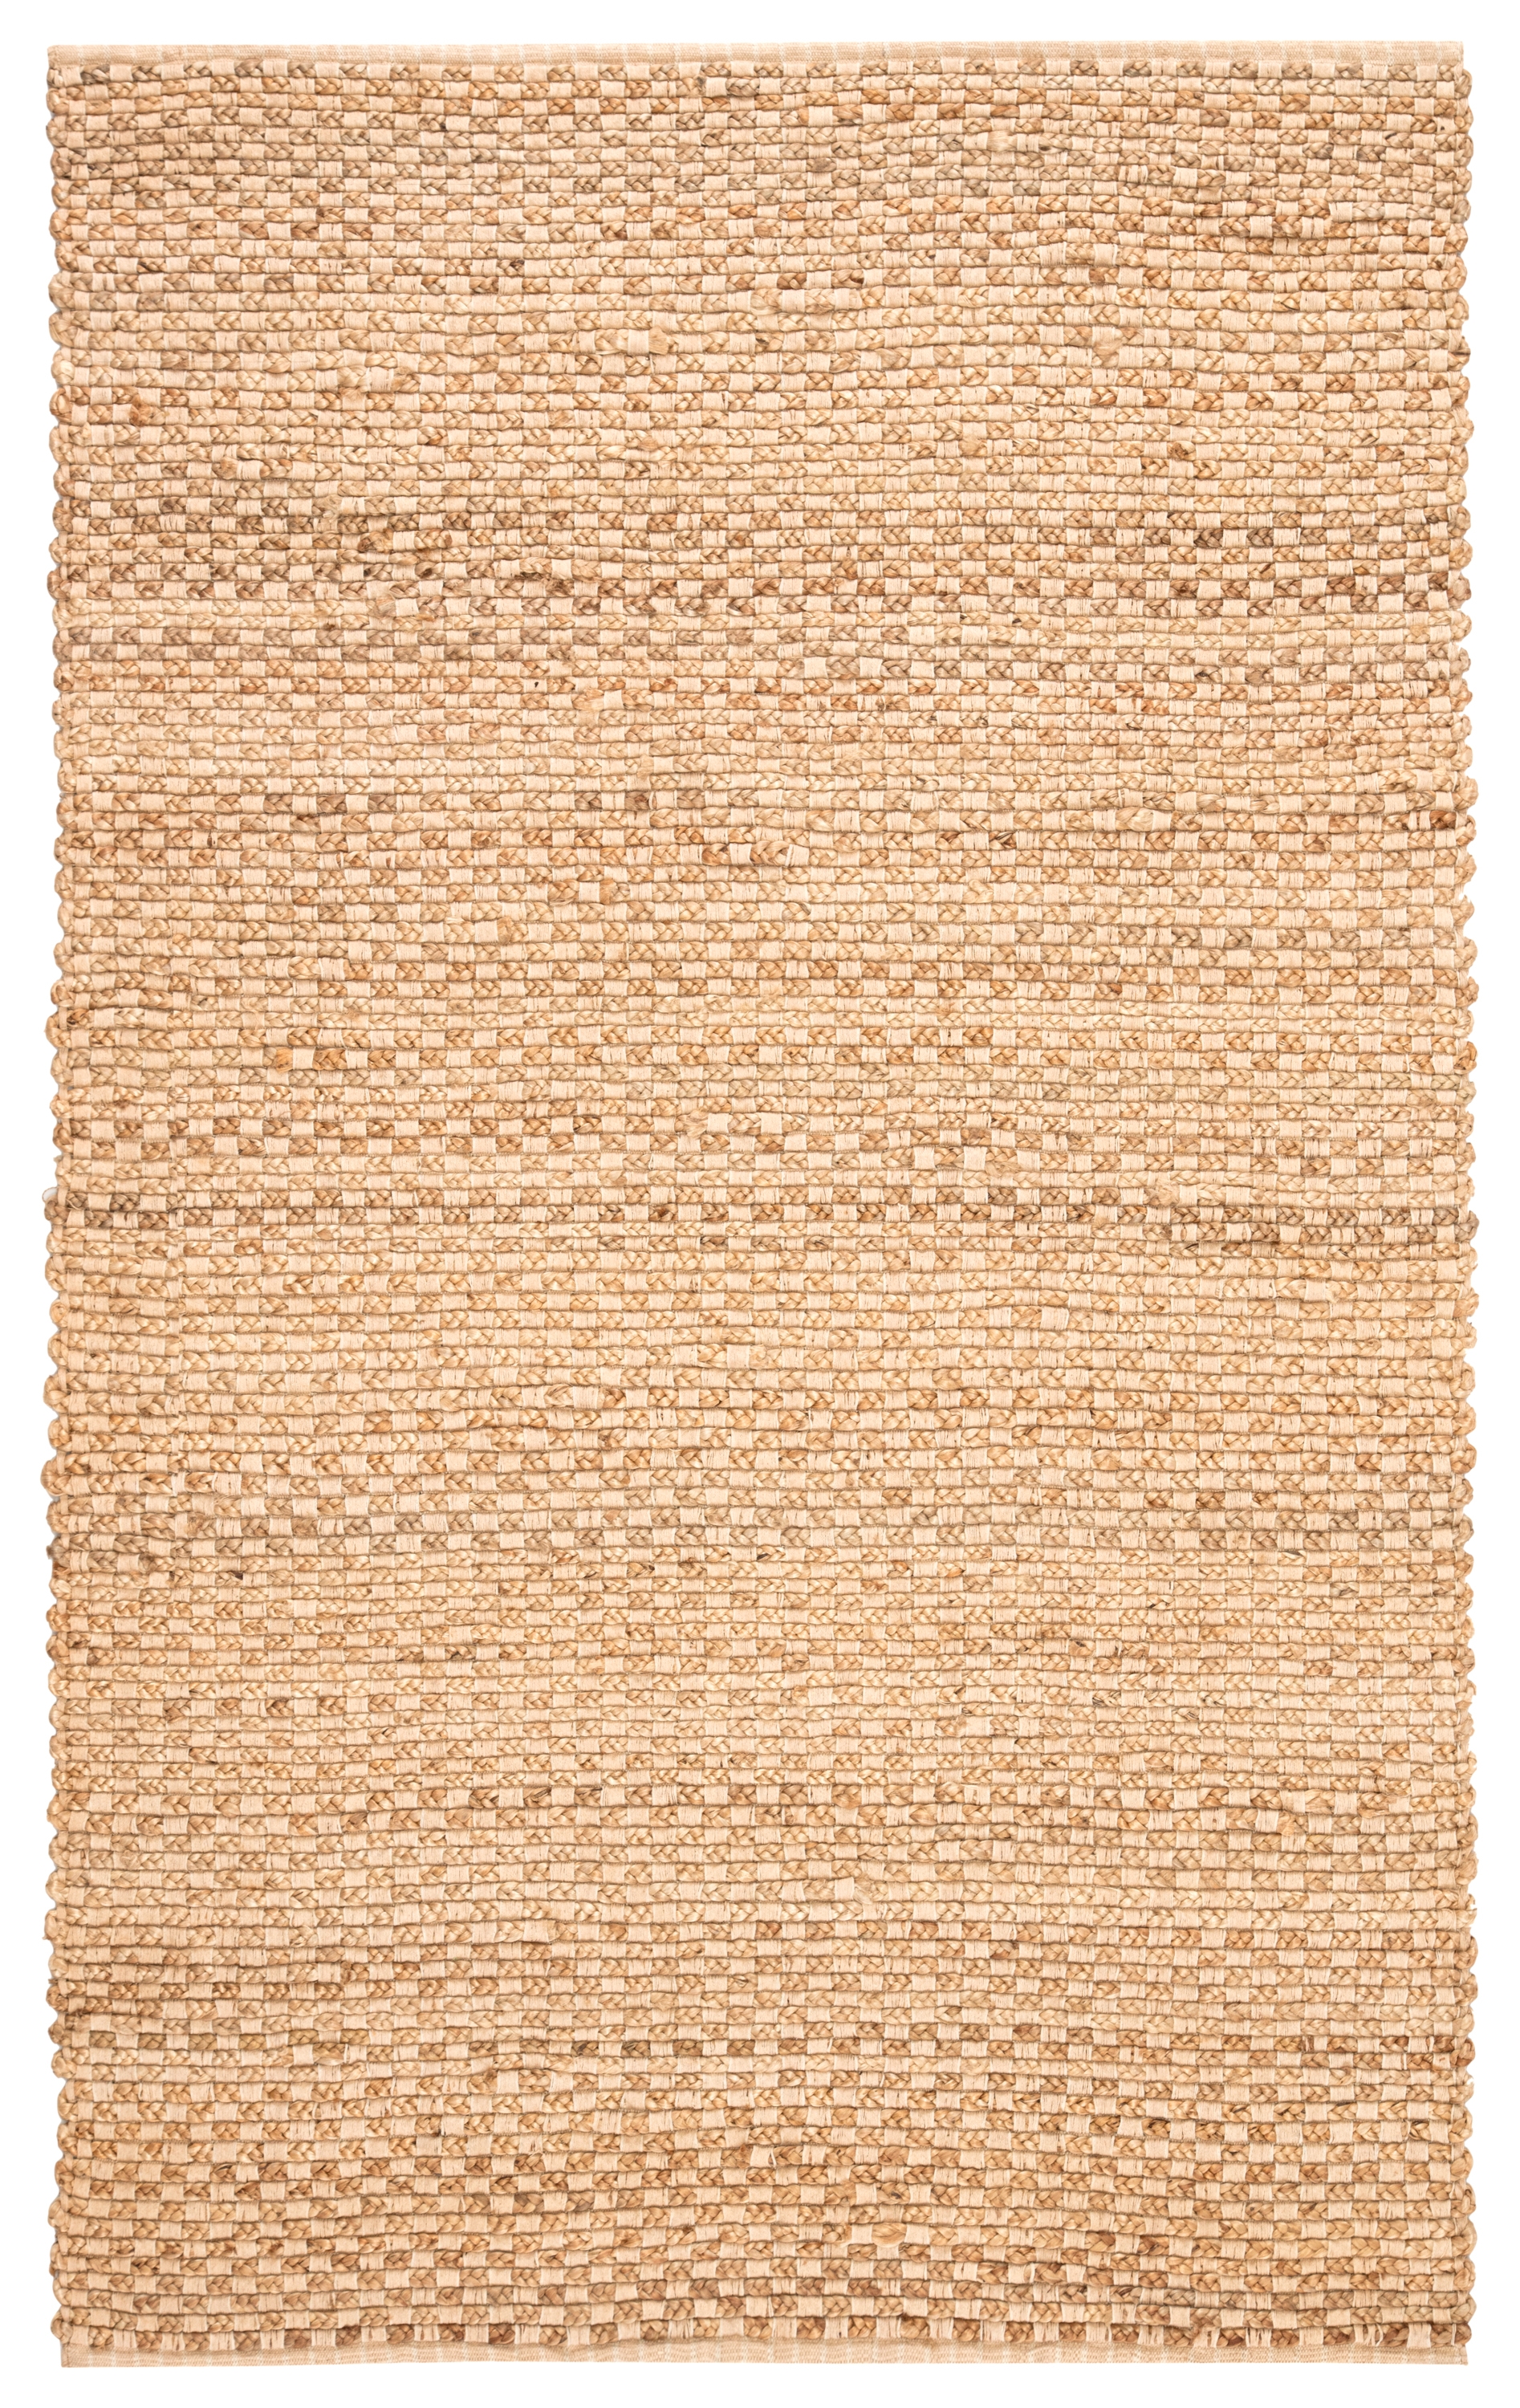 Brady Rug, 5' x 8' - Image 0